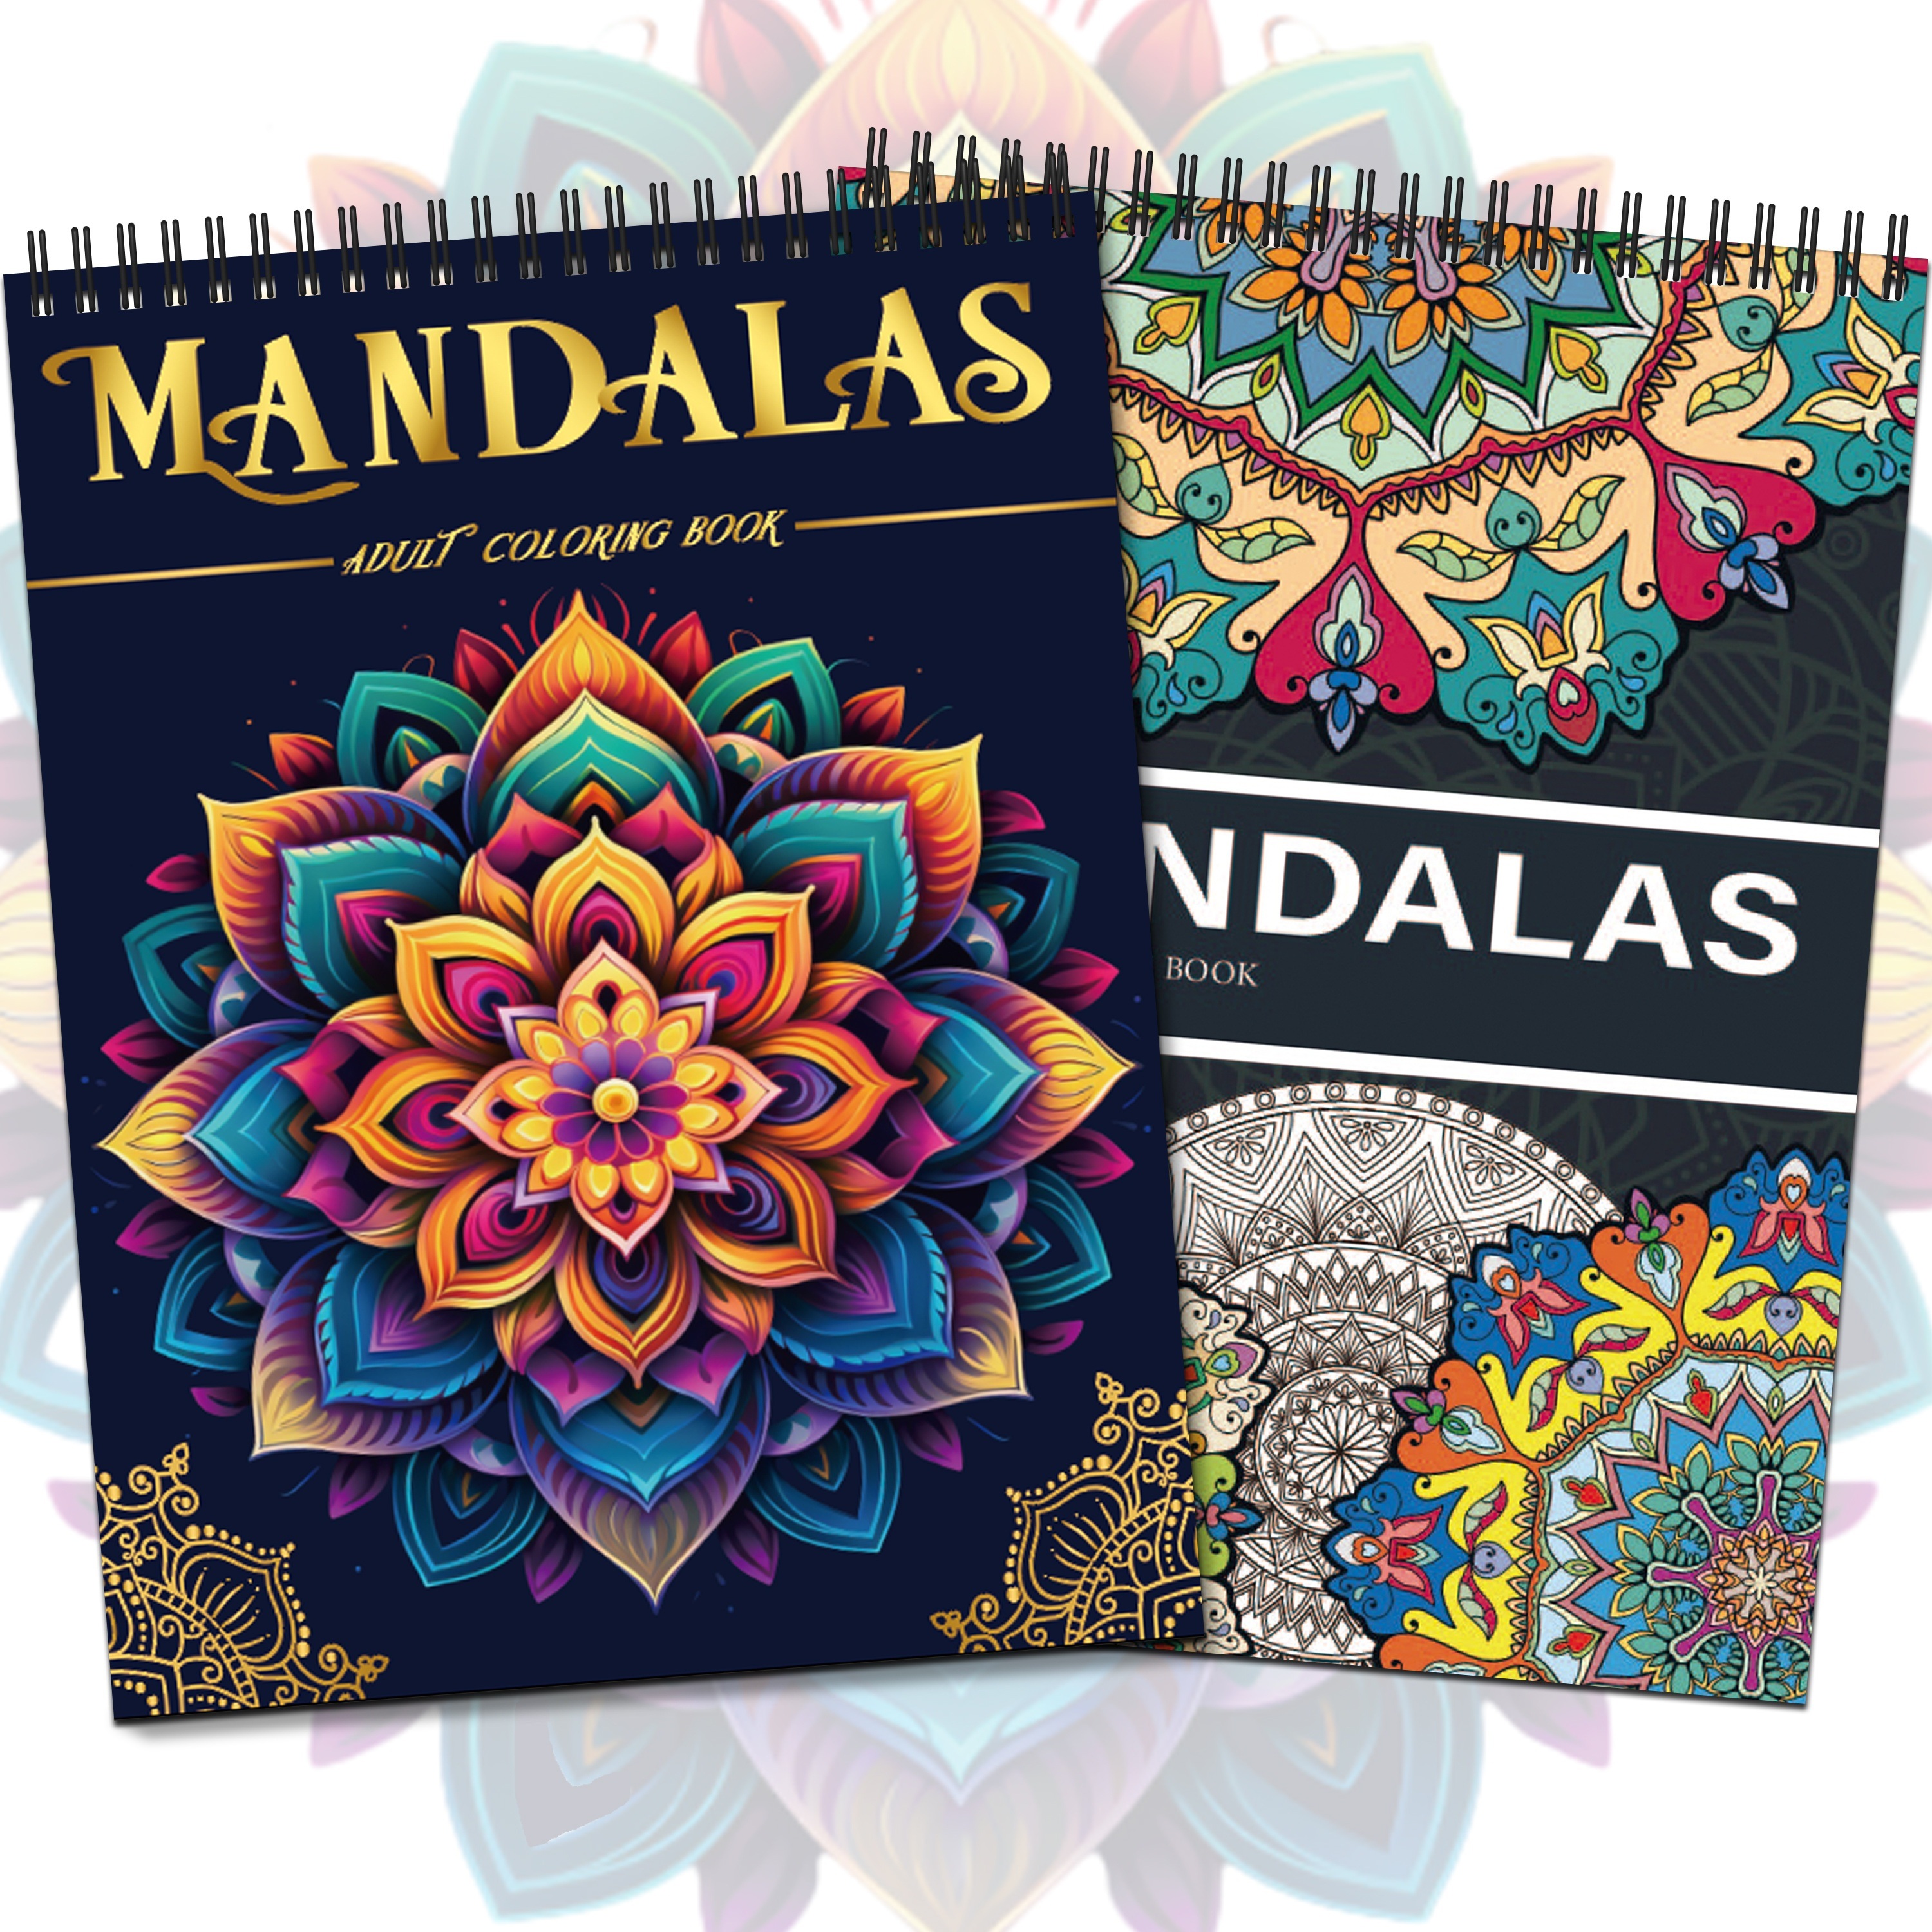 100 Mandalas - Libro de Colorear Para Adultos: 100 mandala: colorear mandalas  adultos: 100 mandalas para la reducción del estrés / de mandalas  por a  book by Mandala de Arte Colorear Adultos